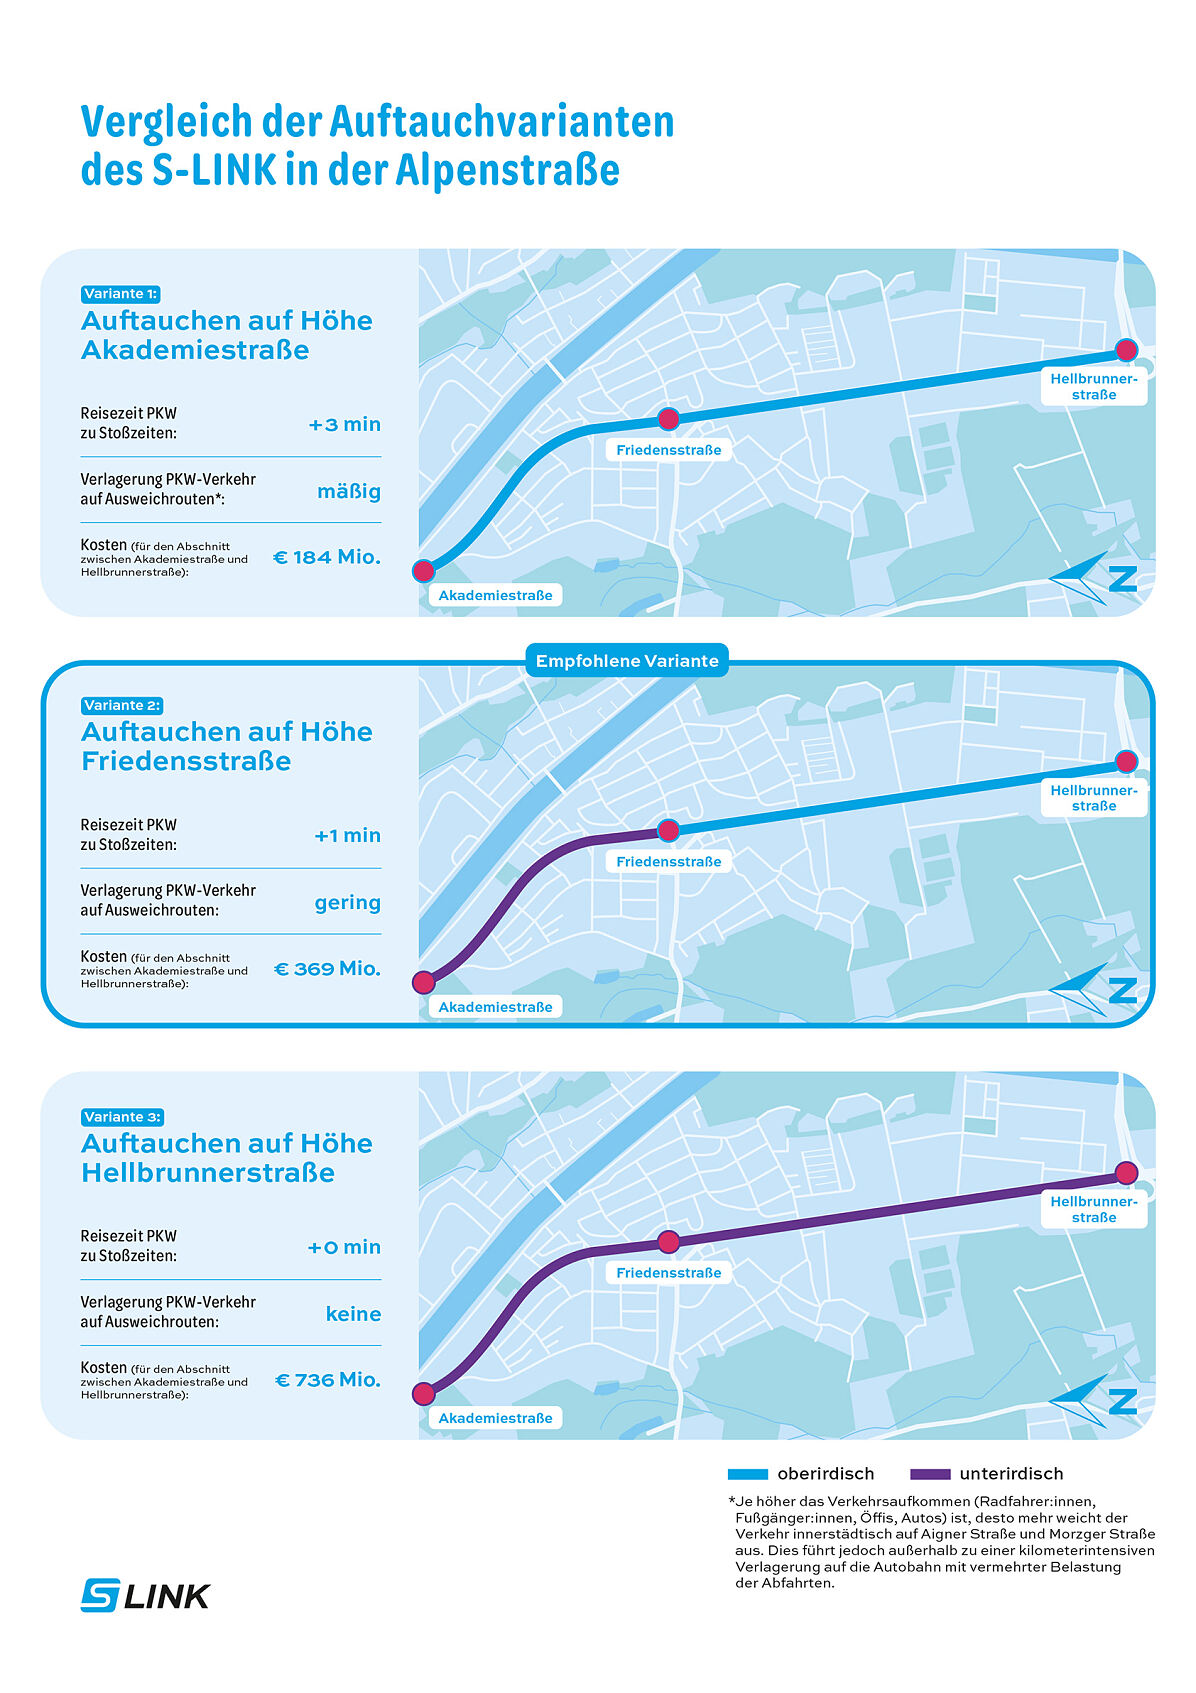 Vergleich der Auftauchvarianten des S-LINK in der Alpenstraße